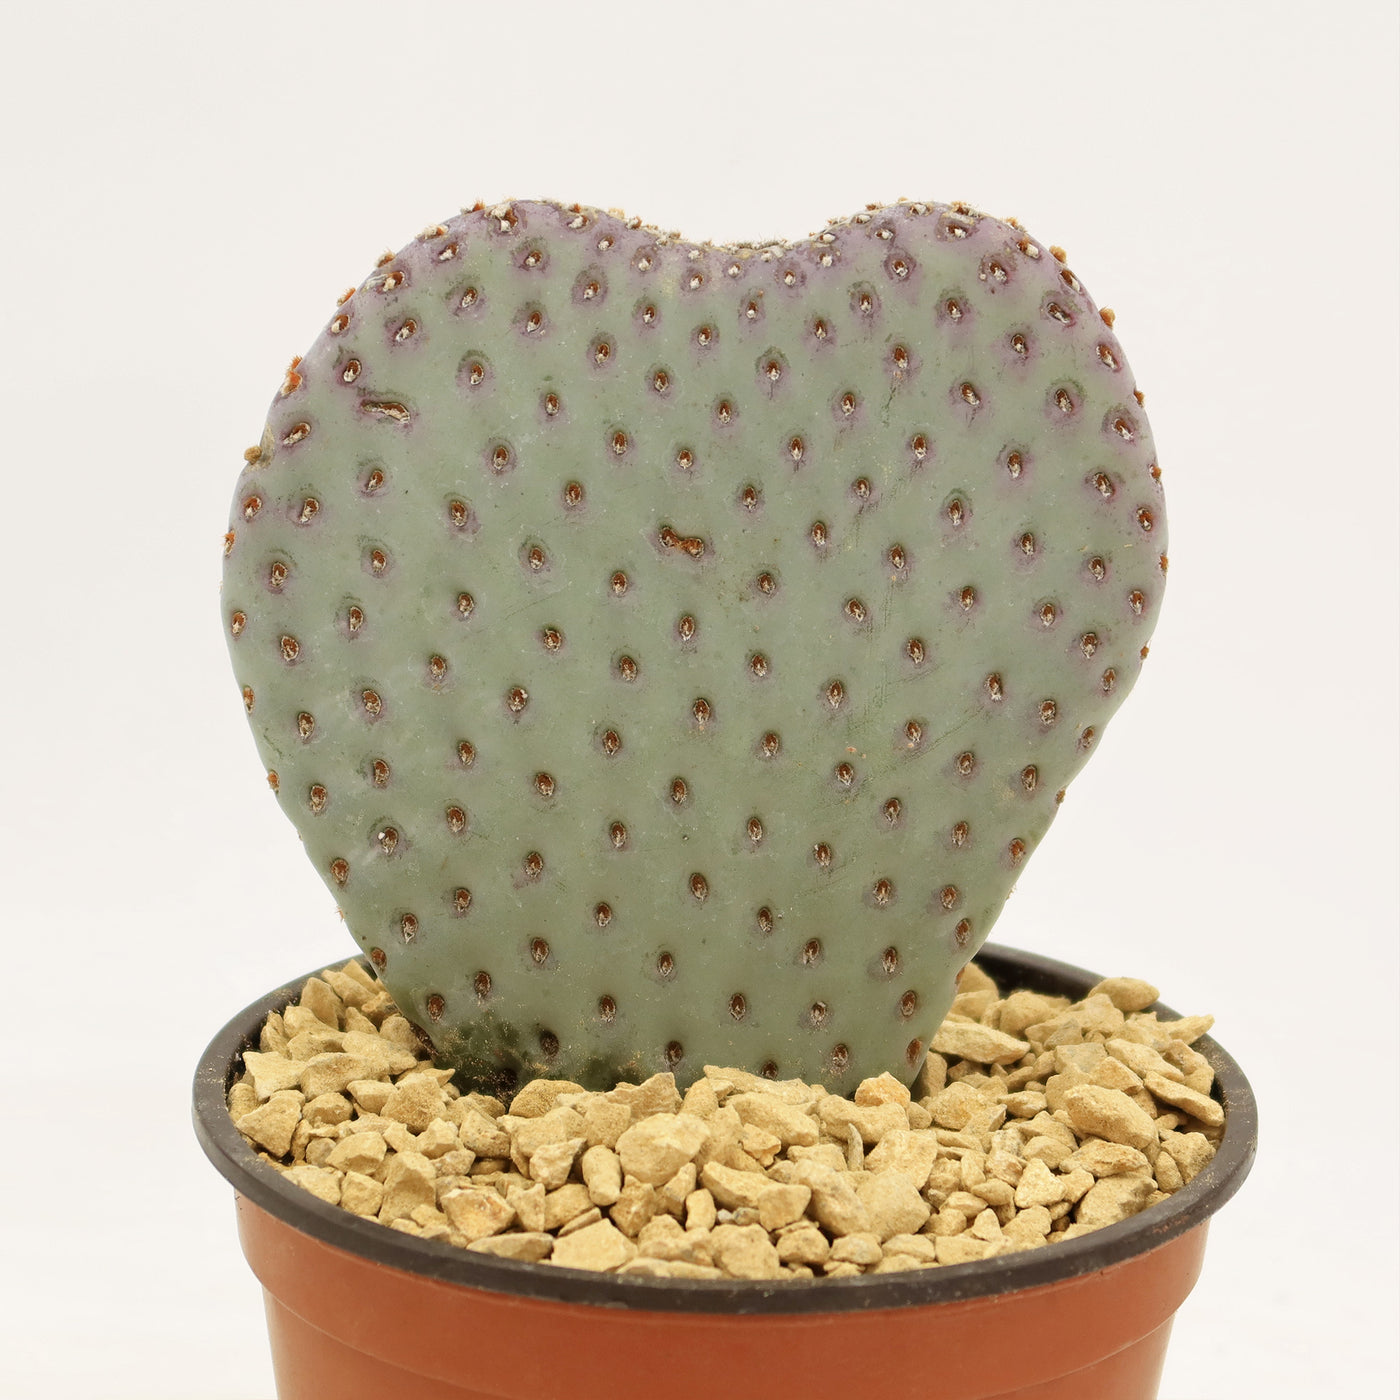 Beavertail Cactus 'Opuntia basilaris'